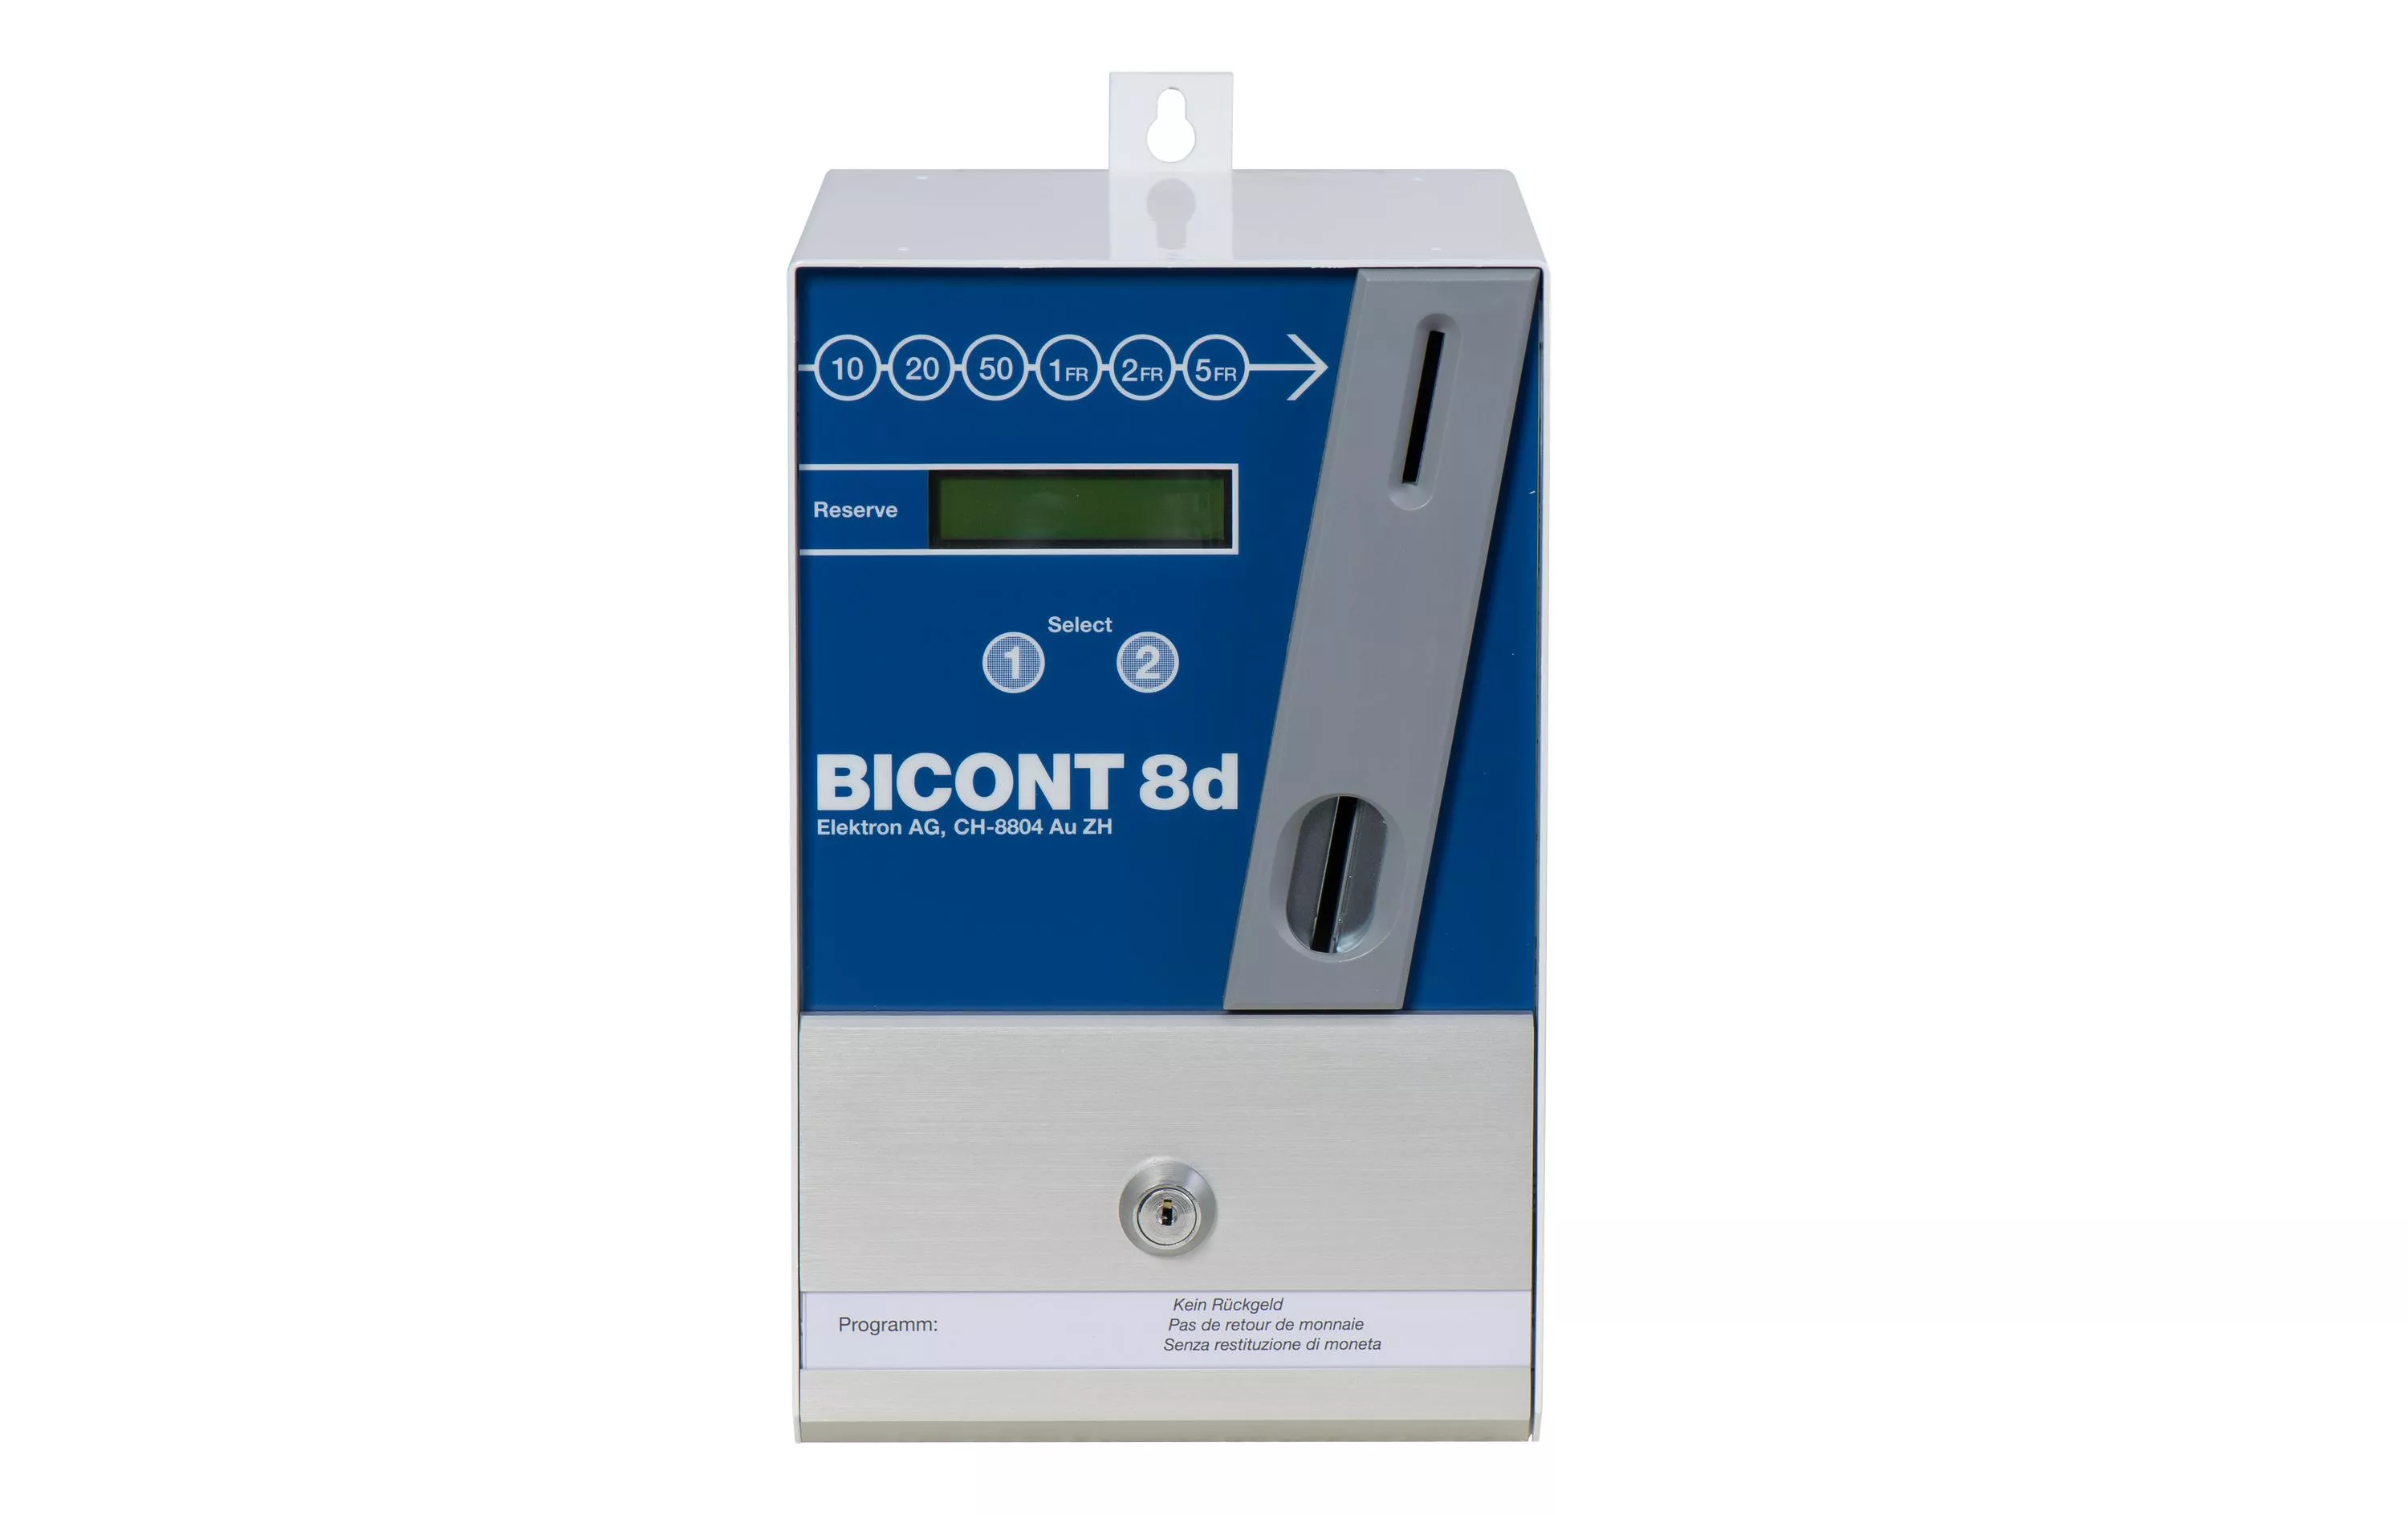 Münzschaltautomat Bicont 8d für 2 Verbraucher